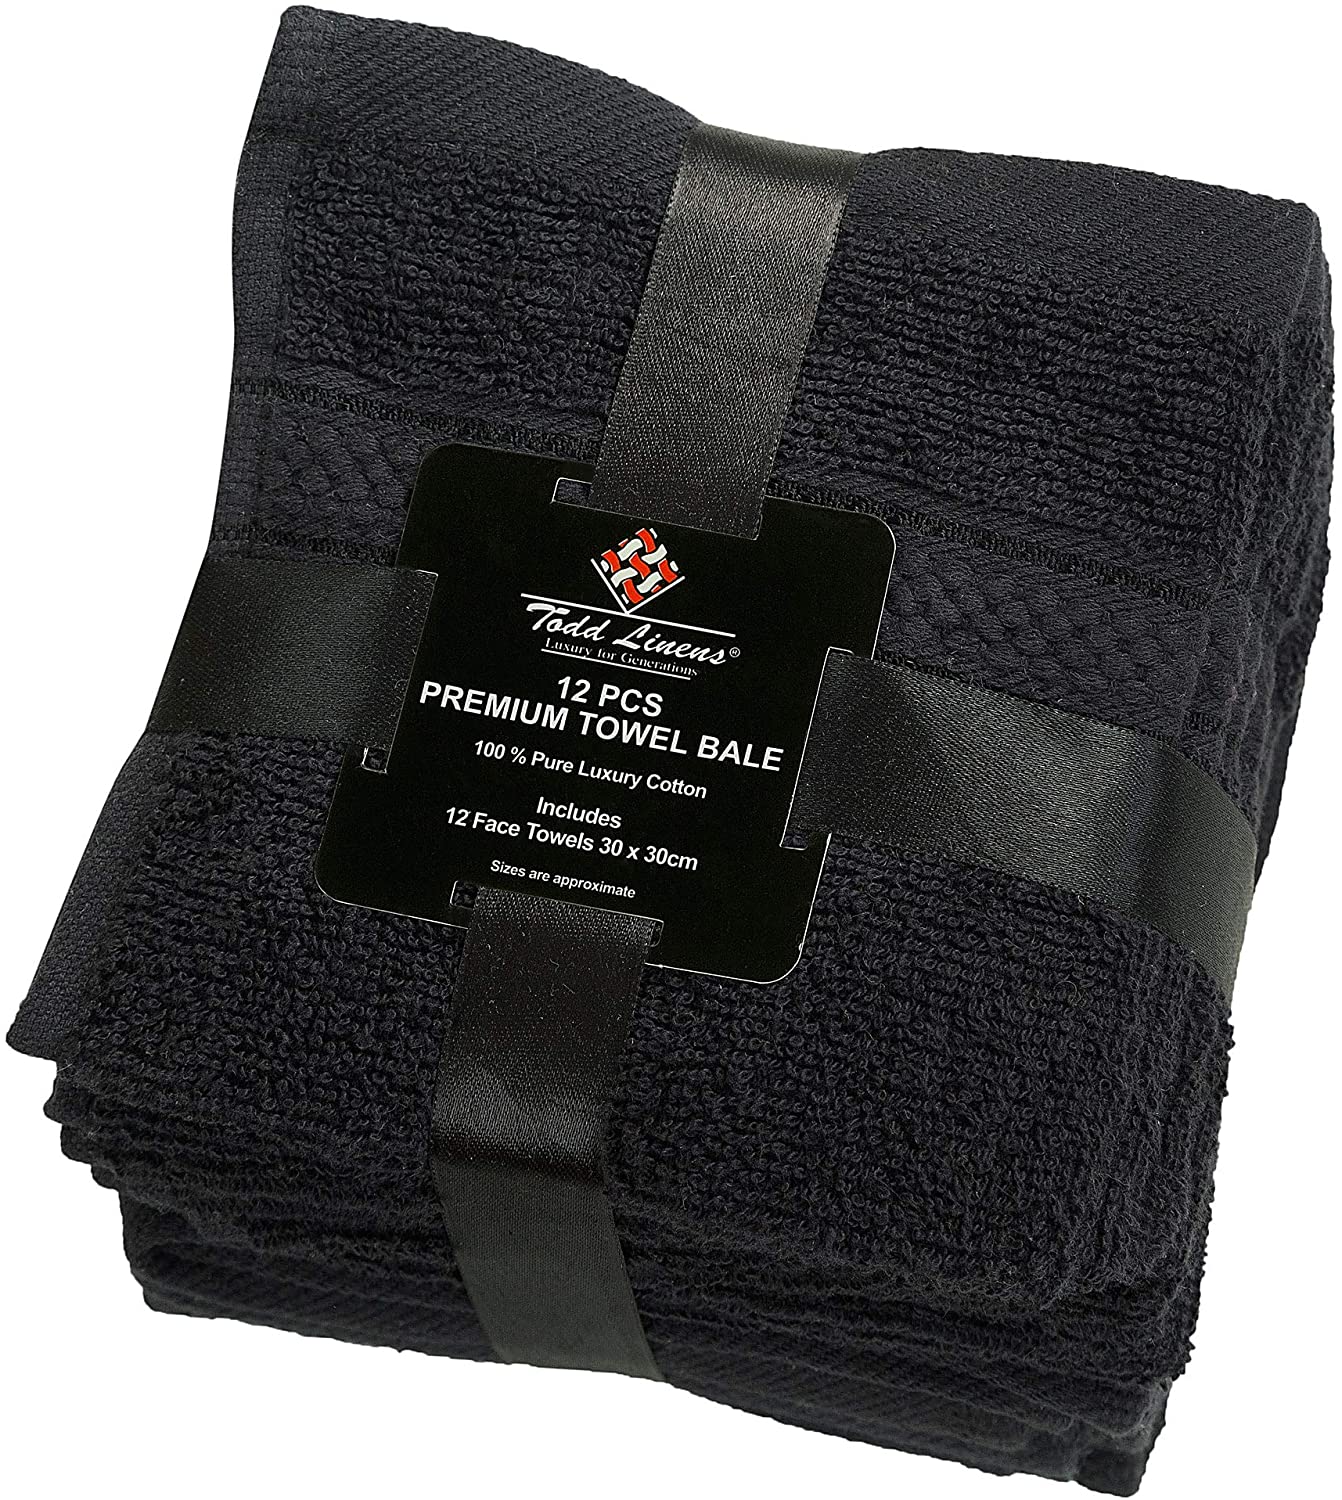 12 Pcs Face Cotton Towel Bale Set Black Plain